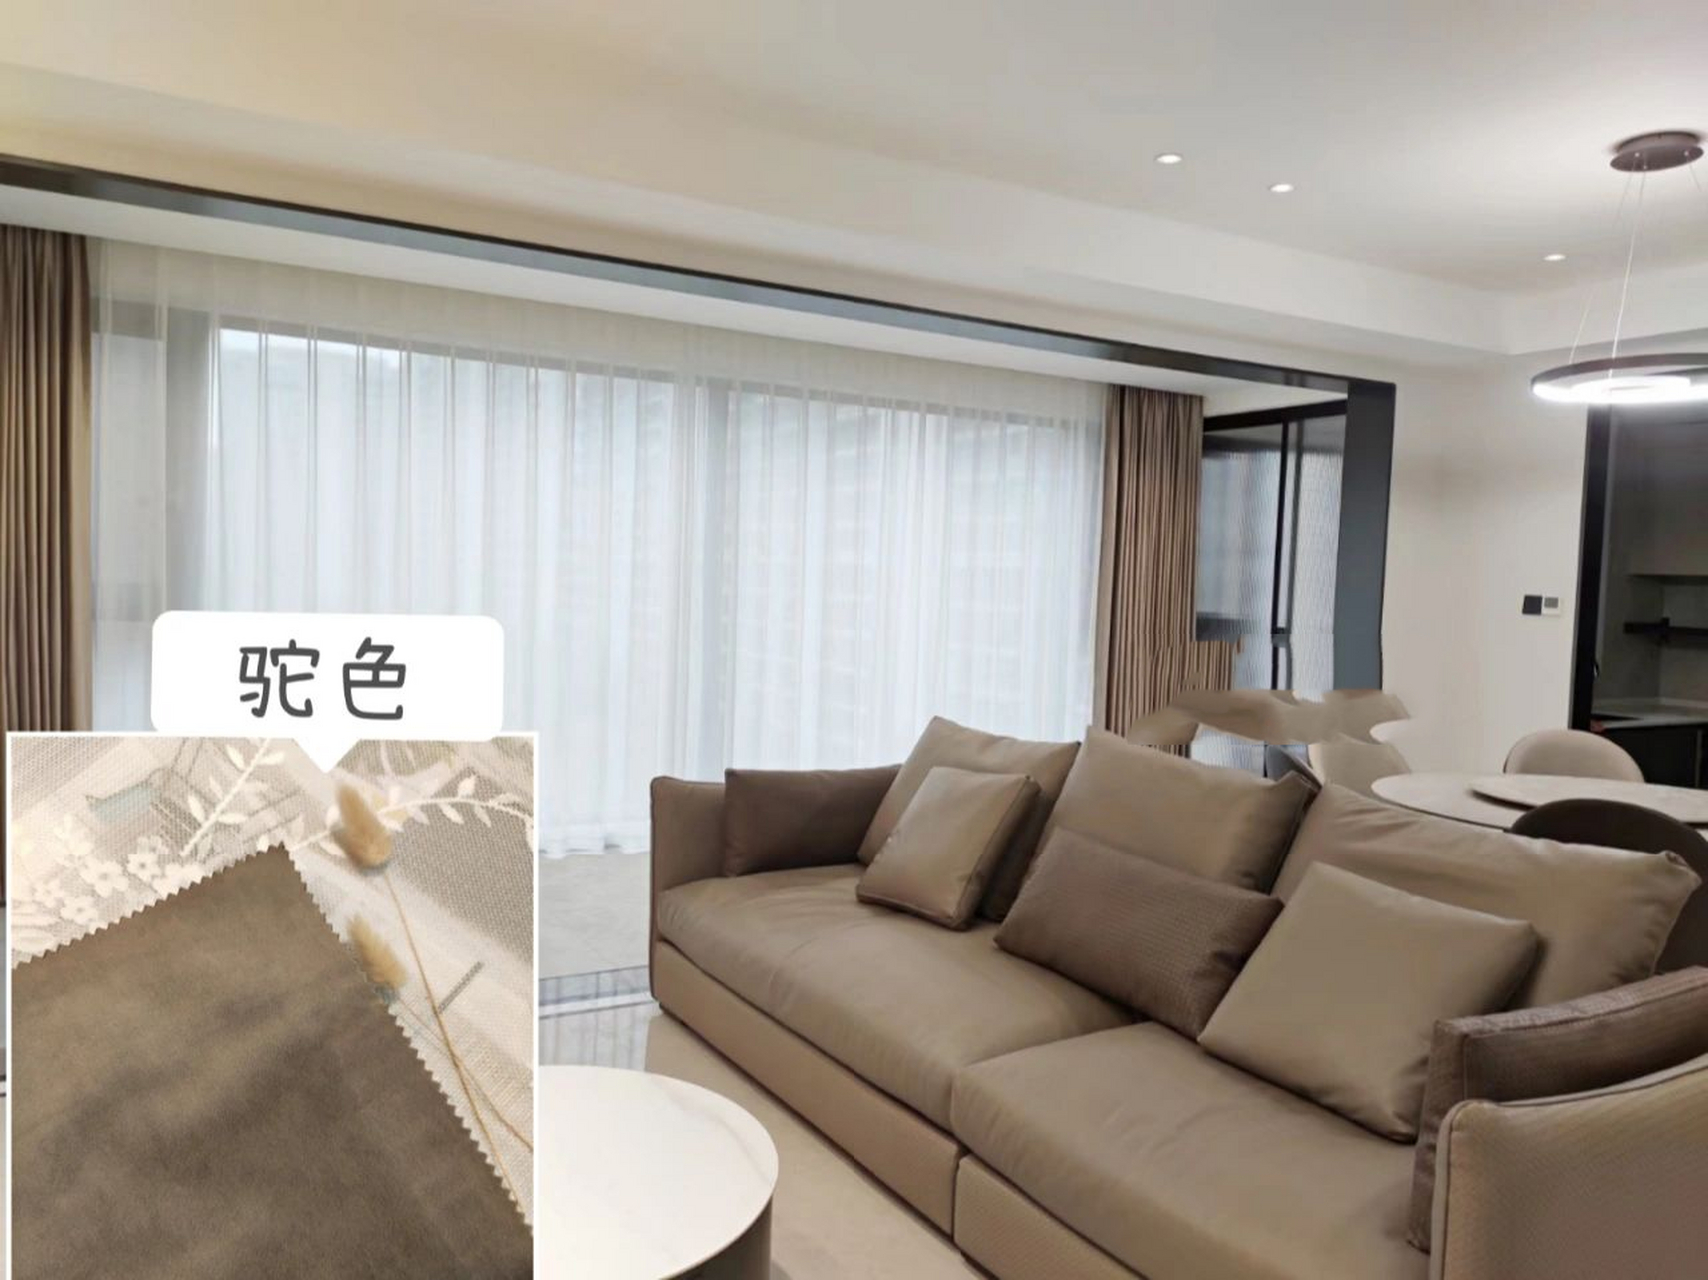 沙发应该如何搭配窗帘 7070咖啡色一直是很多家庭常用的沙发颜色